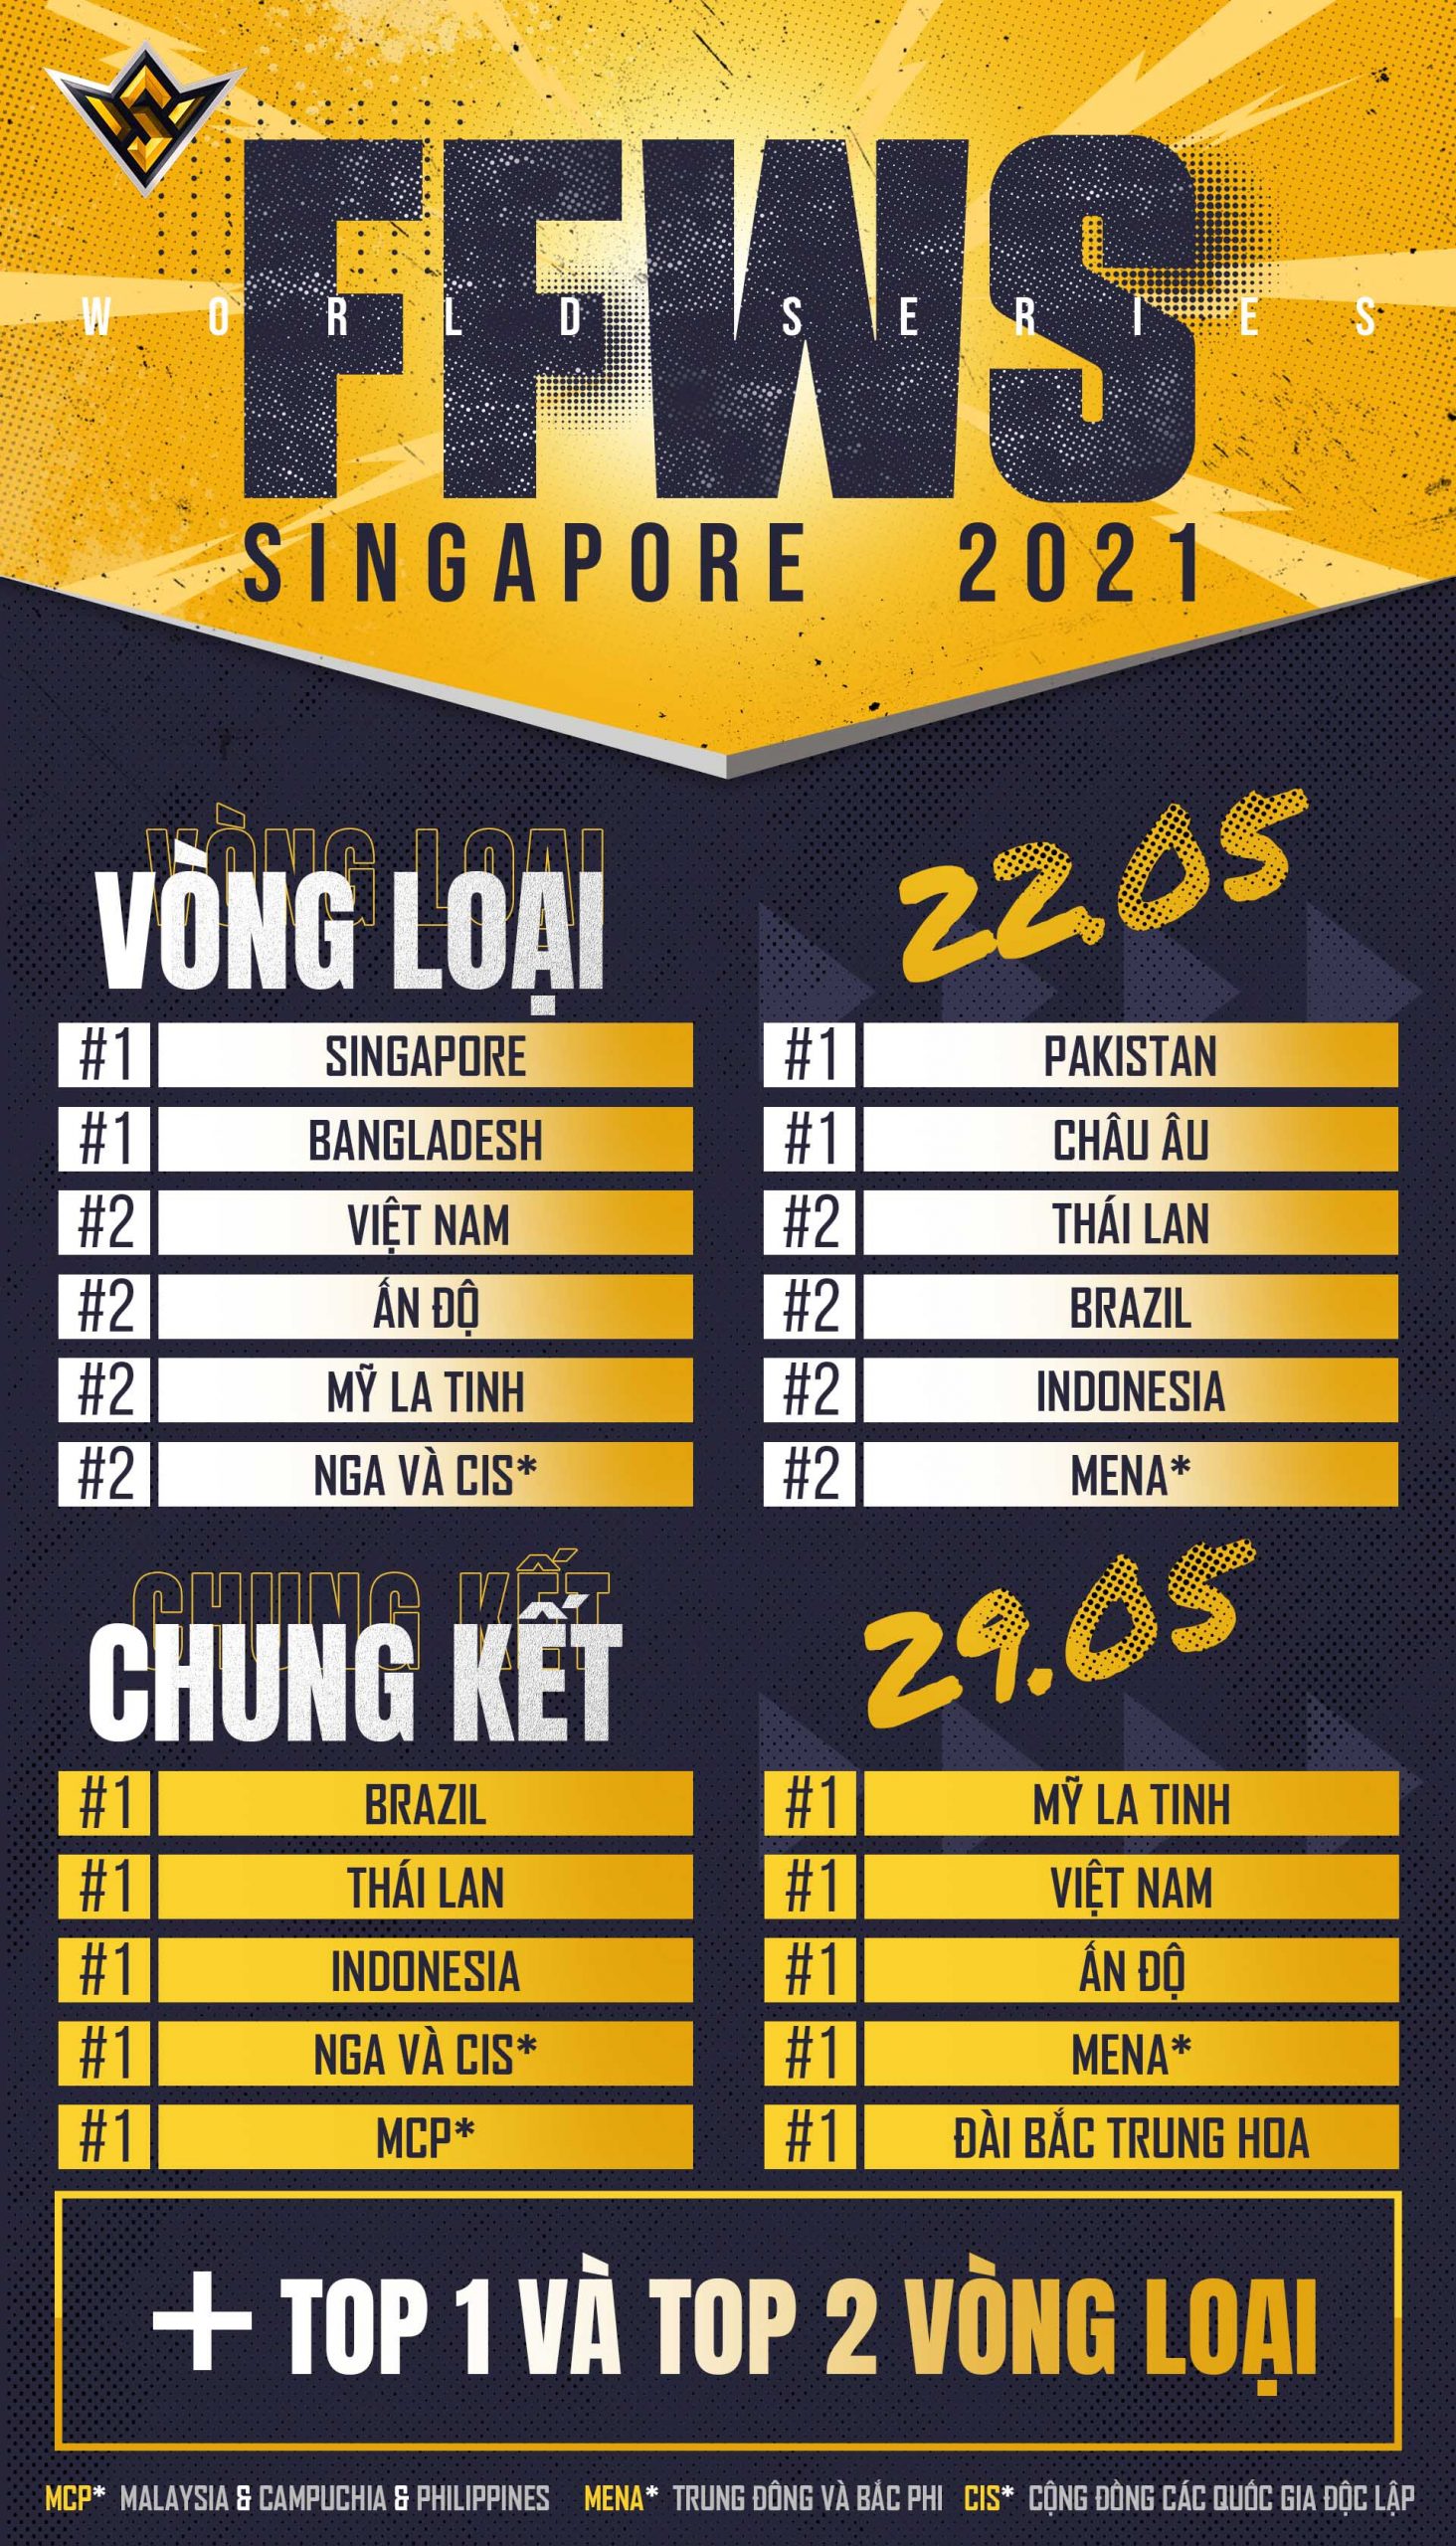 Garena công bố giải Free Fire World Series 2021 Singapore với tổng giải thưởng lên tới 2 triệu đô - giải đấu có giá trị lớn nhất từ trước tới giờ của Free Fire